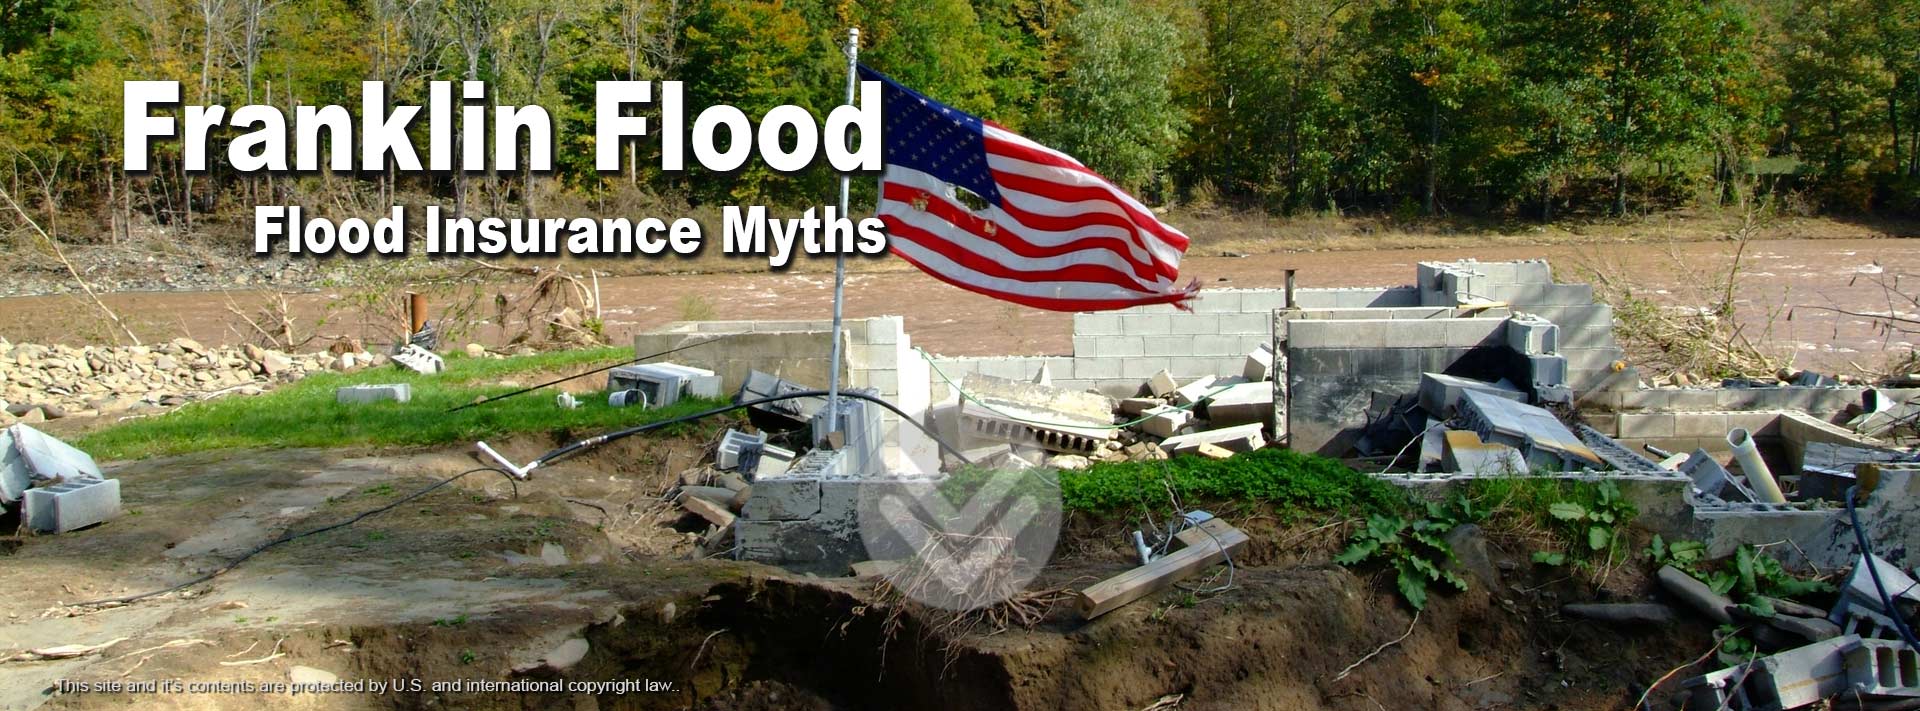 Flood Insurance Myths - Franklin Flood